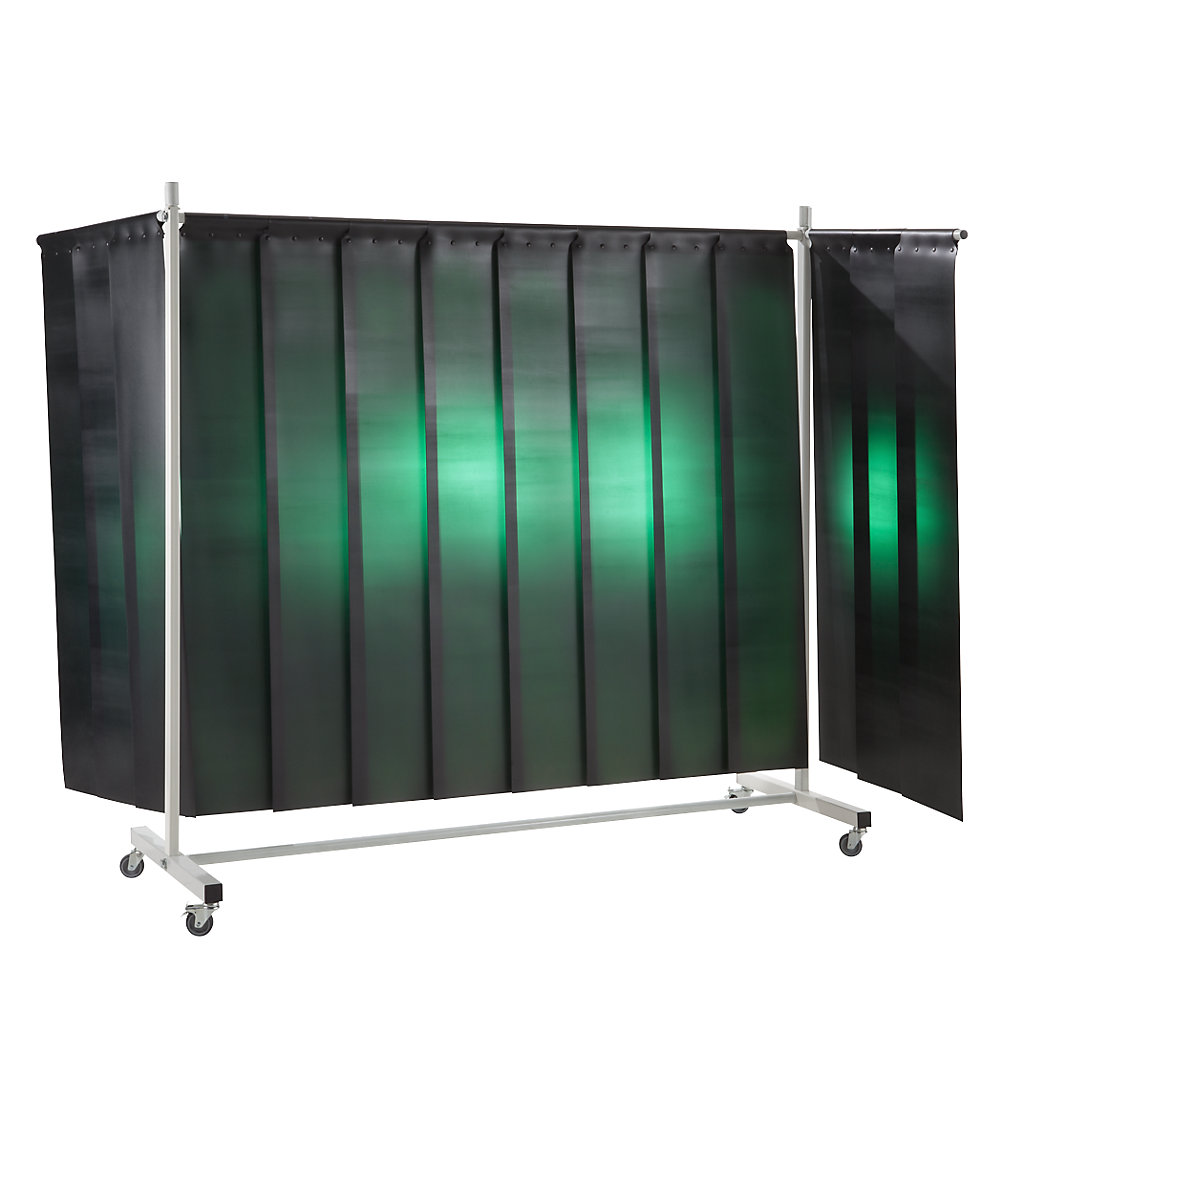 Ochranná clona pro svářeče, mobilní, s lamelovým závěsem, tmavě zelená, š x v 3700 x 2100 mm, 3dílná-2